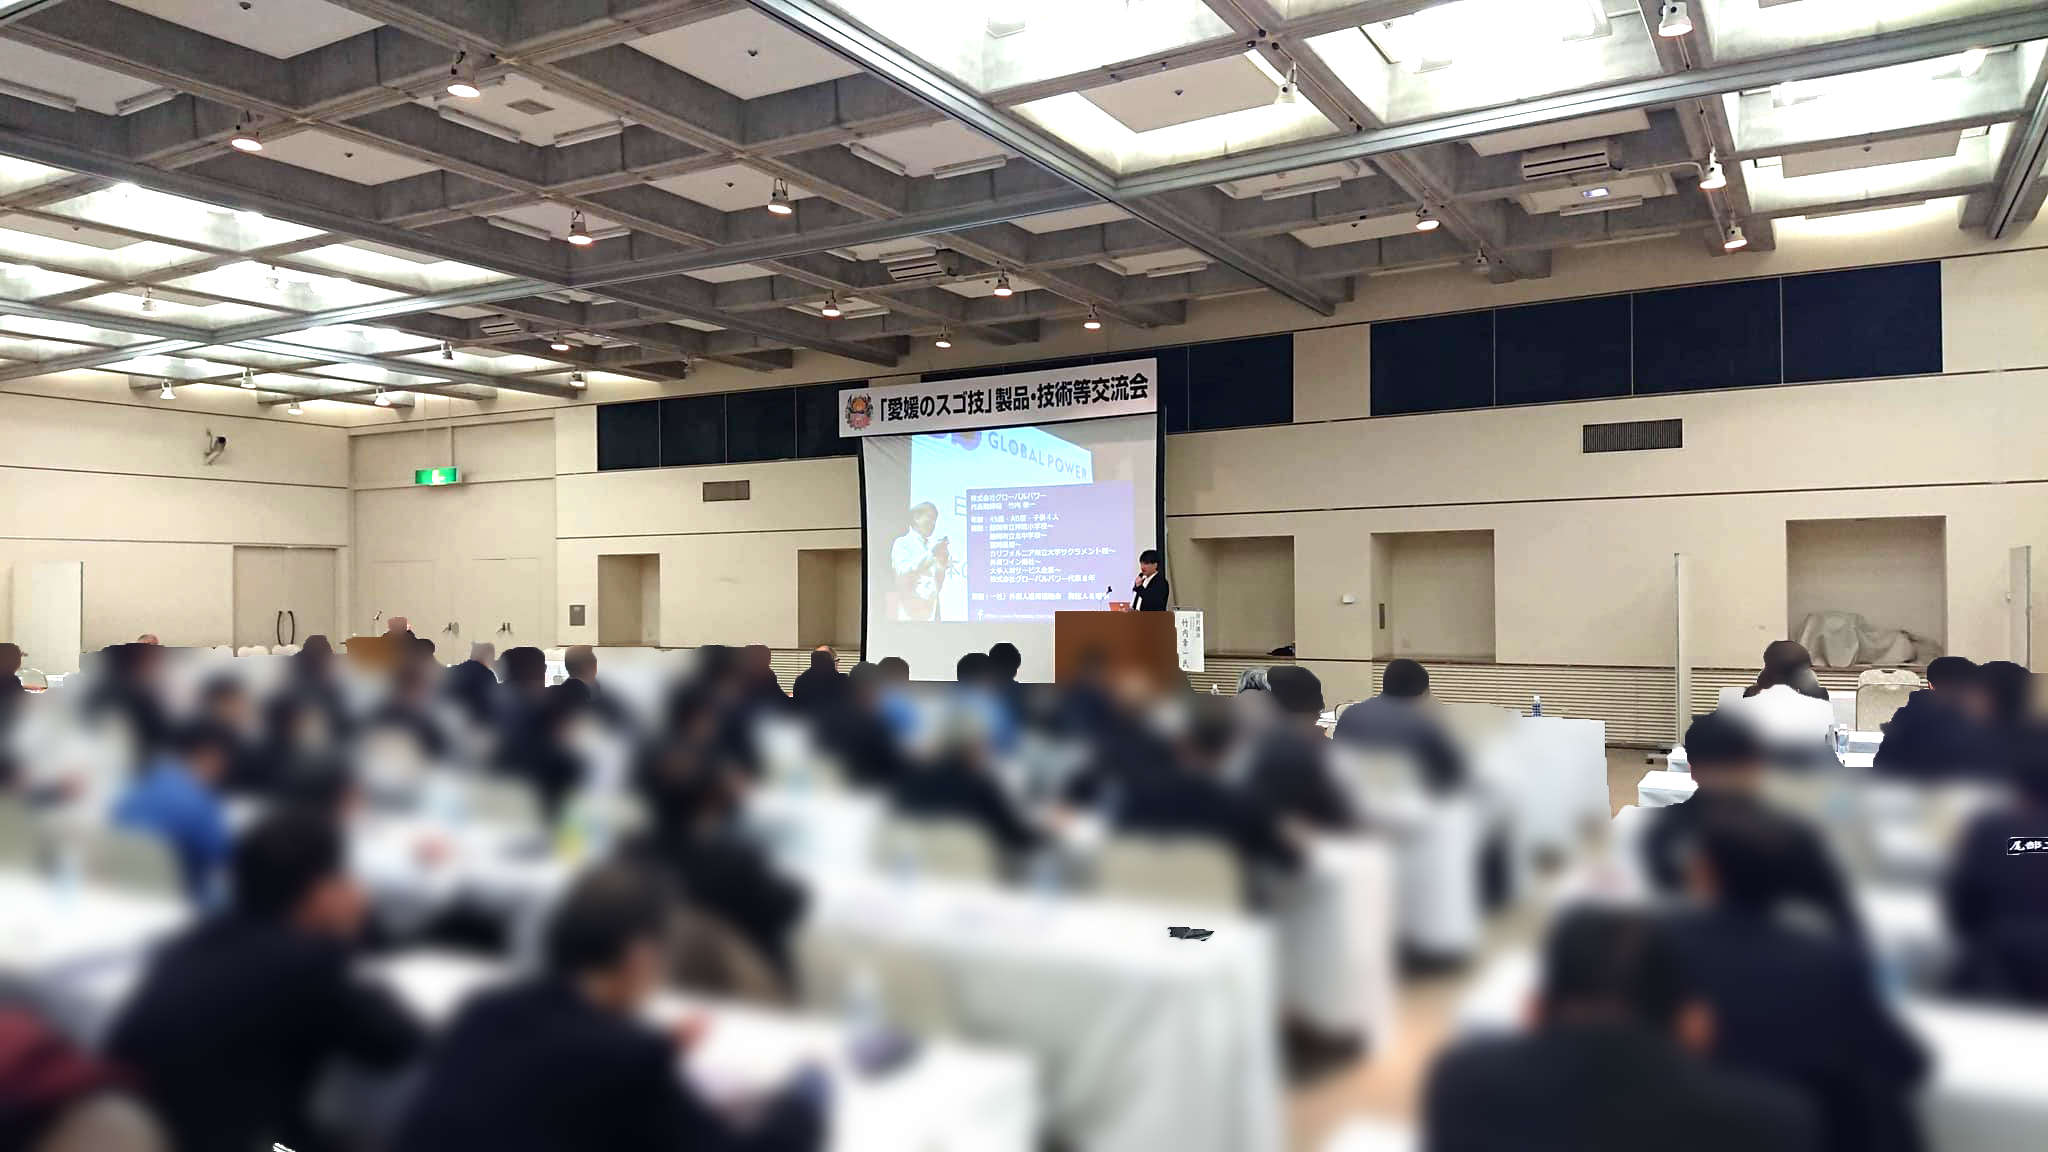 愛媛県庁主催「愛媛のスゴ技 製品・技術等交流会」で代表取締役 竹内が登壇しました